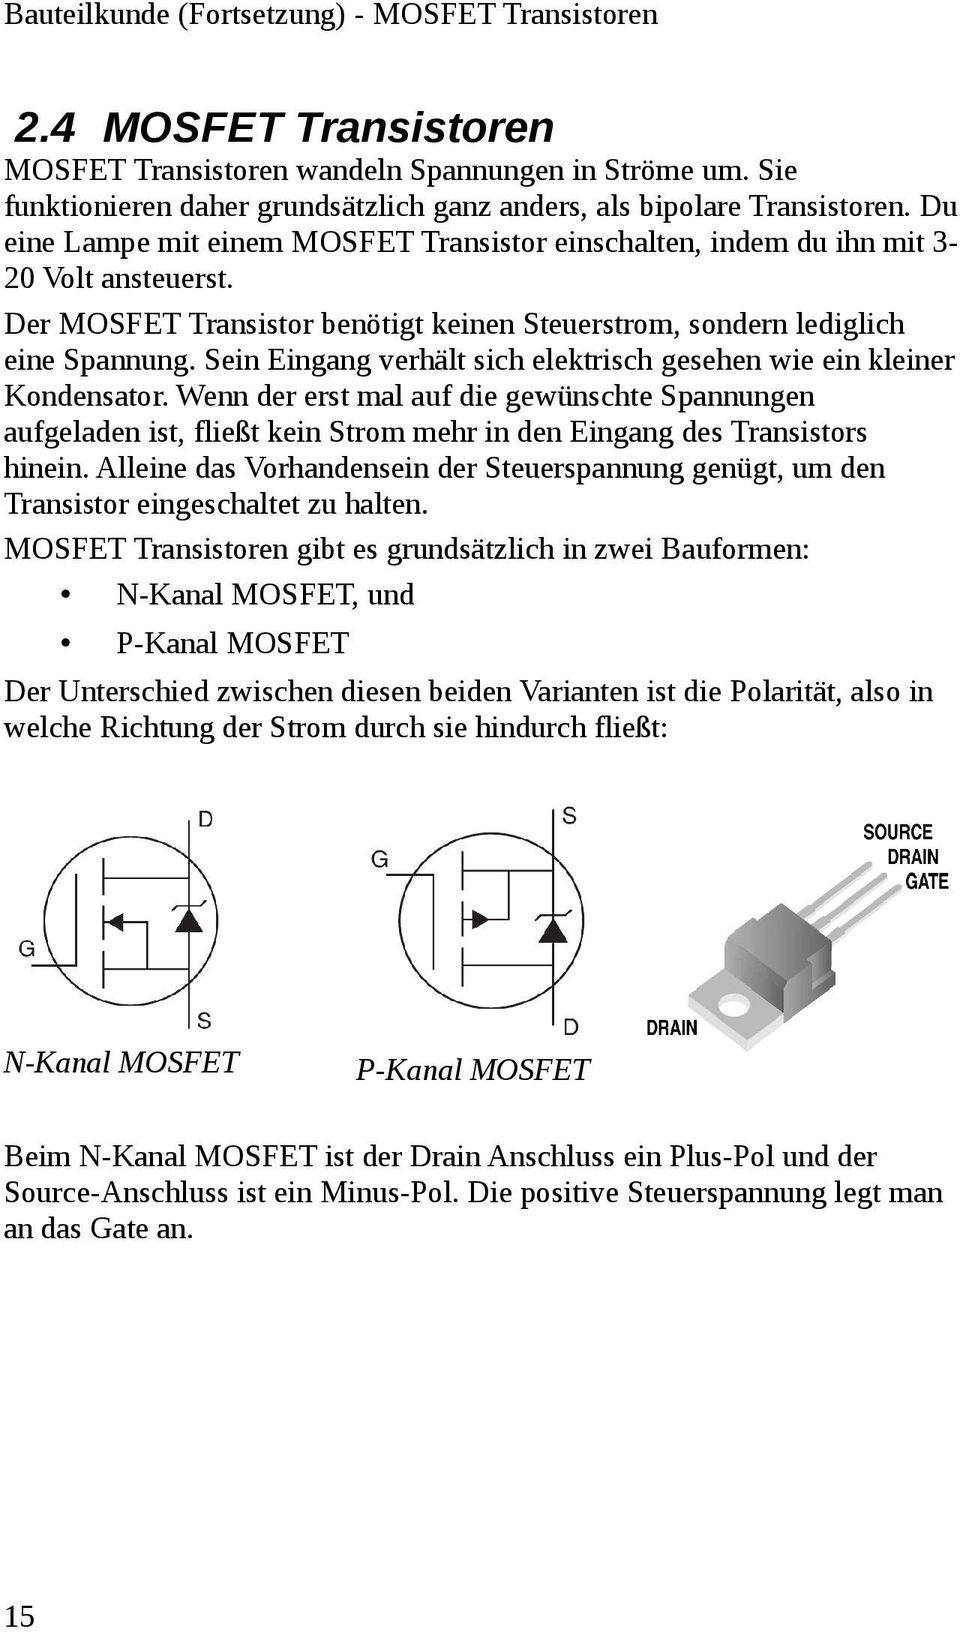 Der MOSFET Transistor benötigt keinen Steuerstrom, sondern lediglich eine Spannung. Sein Eingang verhält sich elektrisch gesehen wie ein kleiner Kondensator.